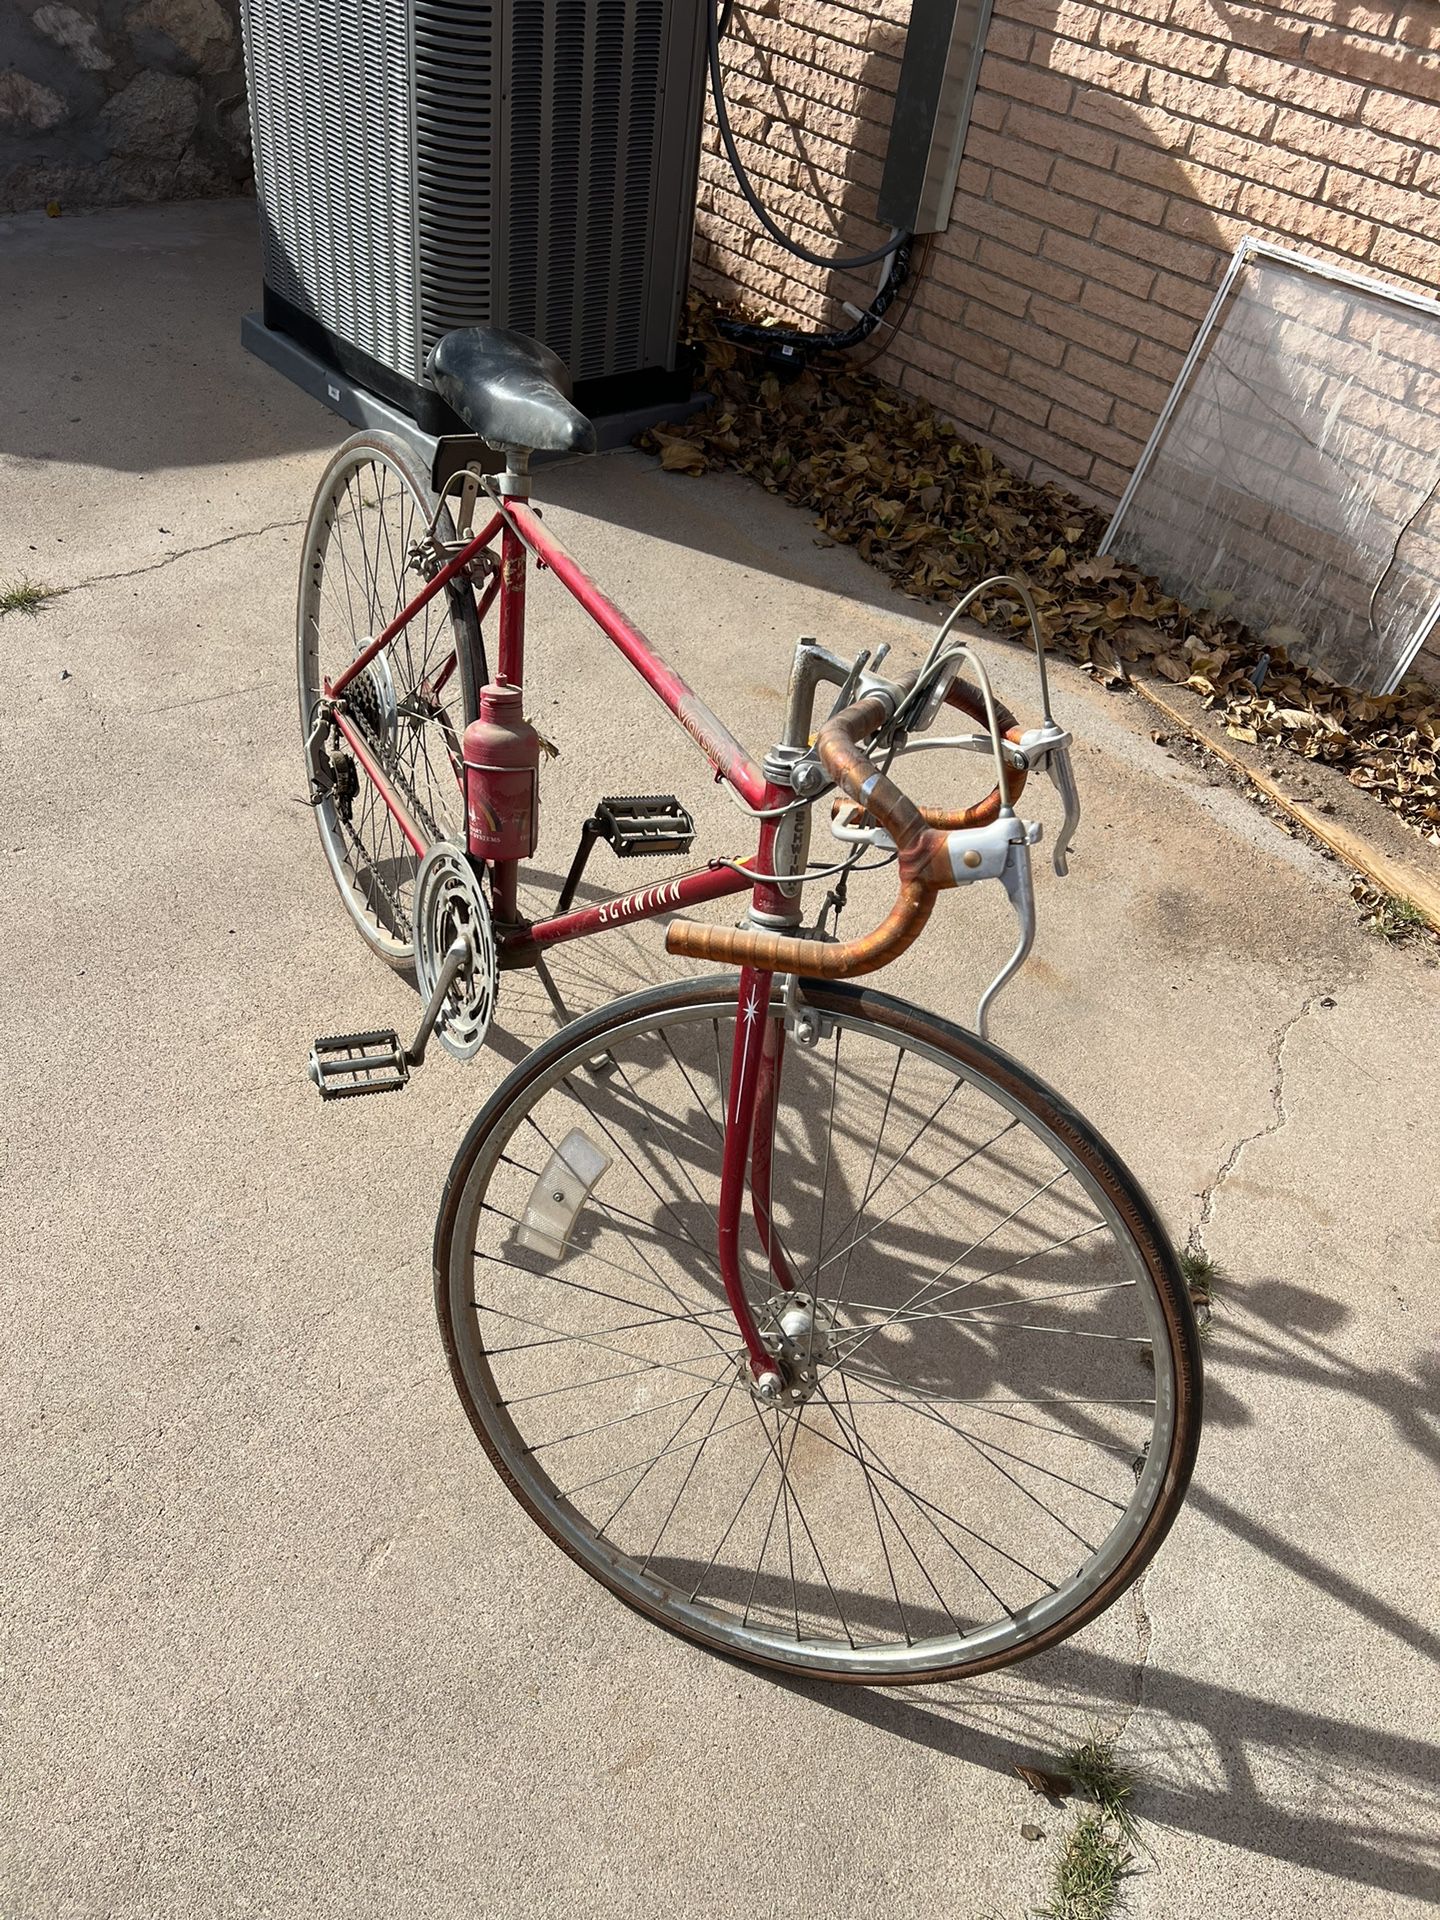 Vintage Schwinn Bikes